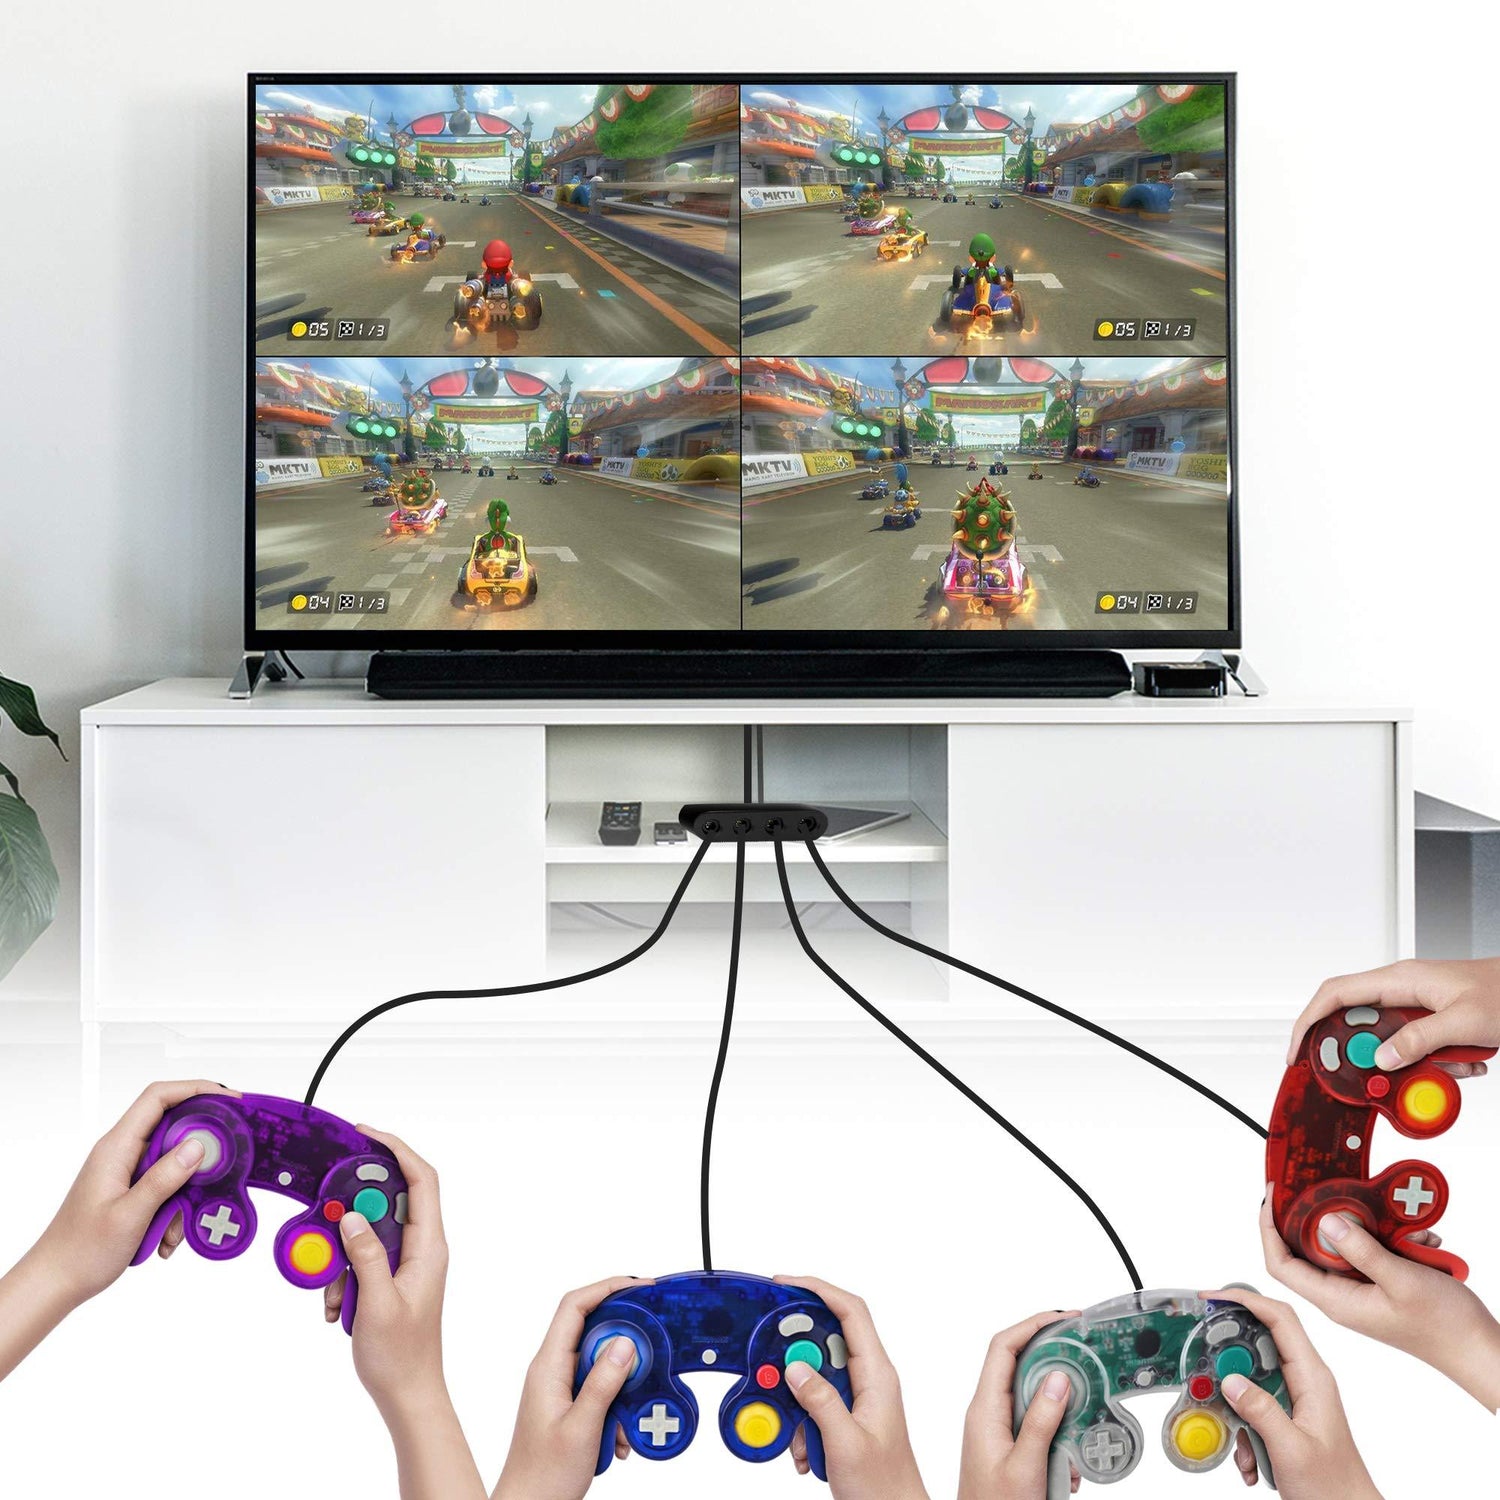 Adaptador de 2 controles Gamecube para Nintendo Switch - Tienda Geek México - TiendaGeek.com